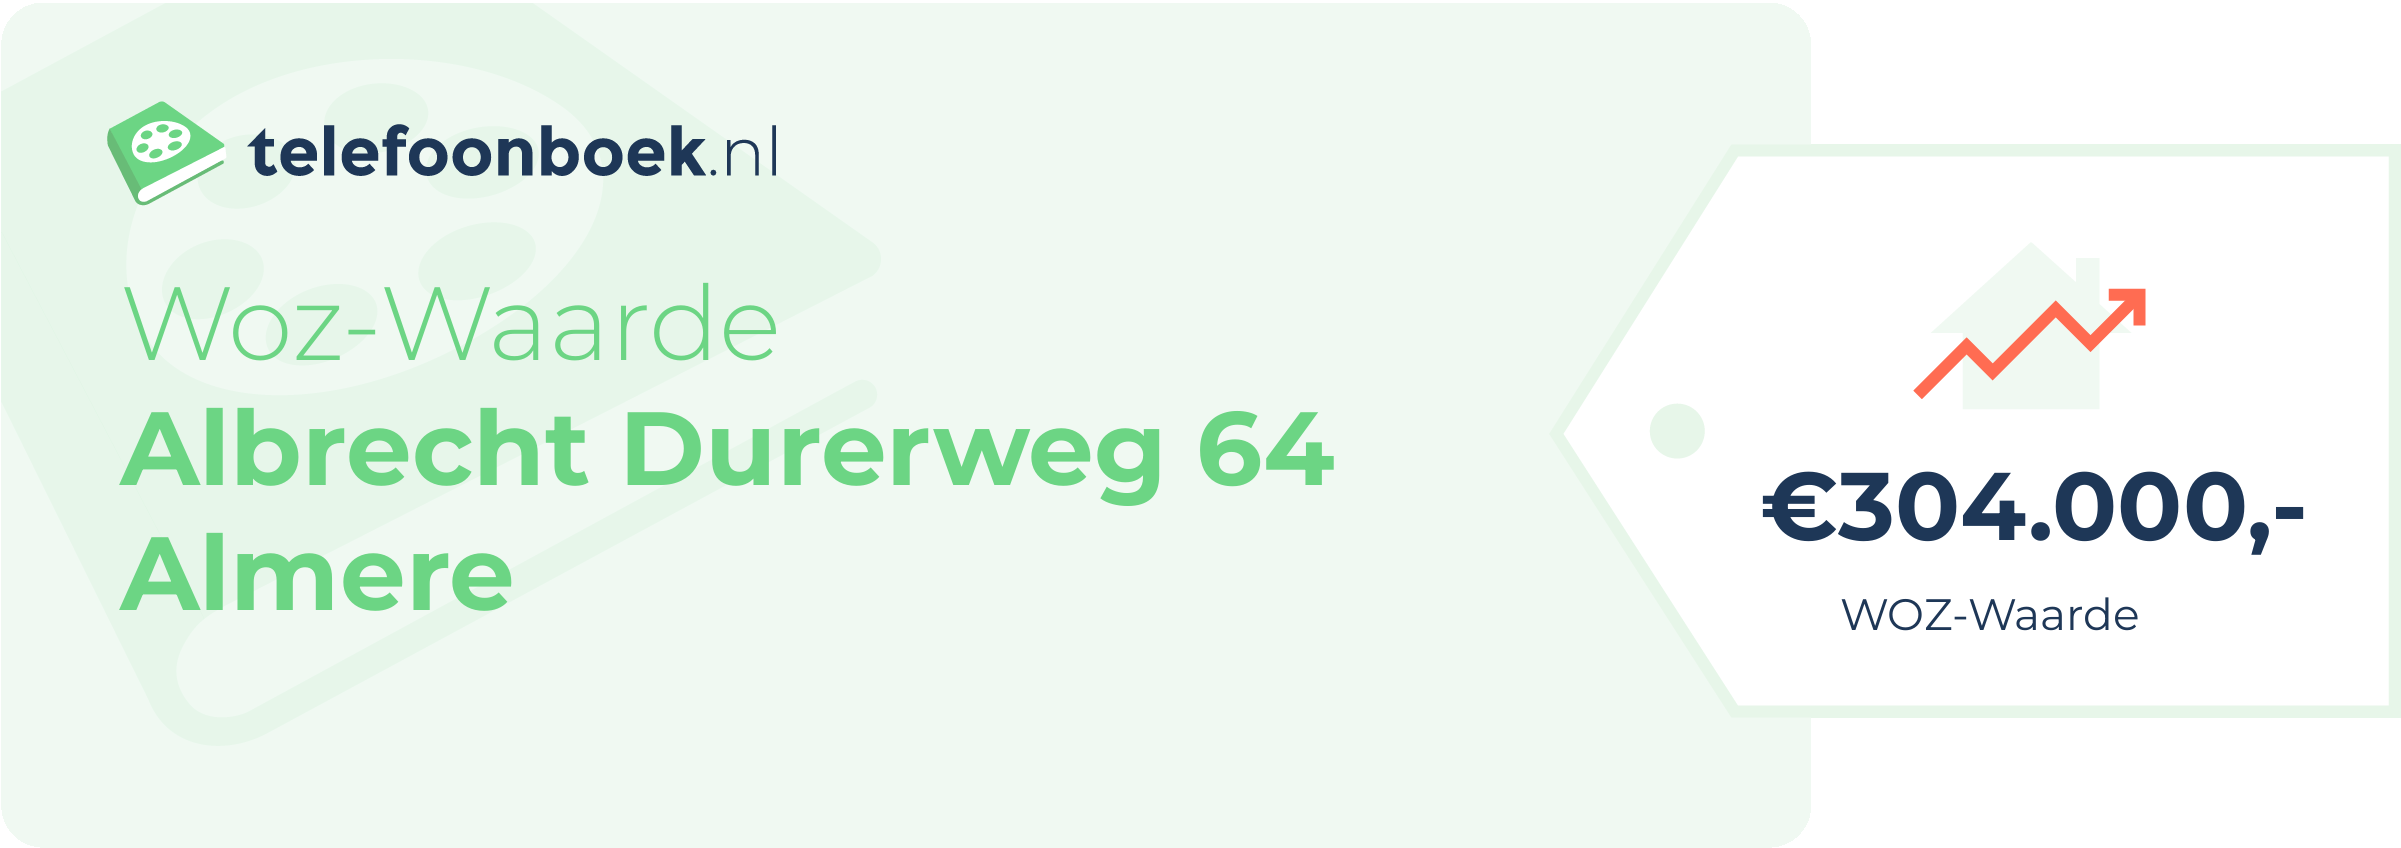 WOZ-waarde Albrecht Durerweg 64 Almere